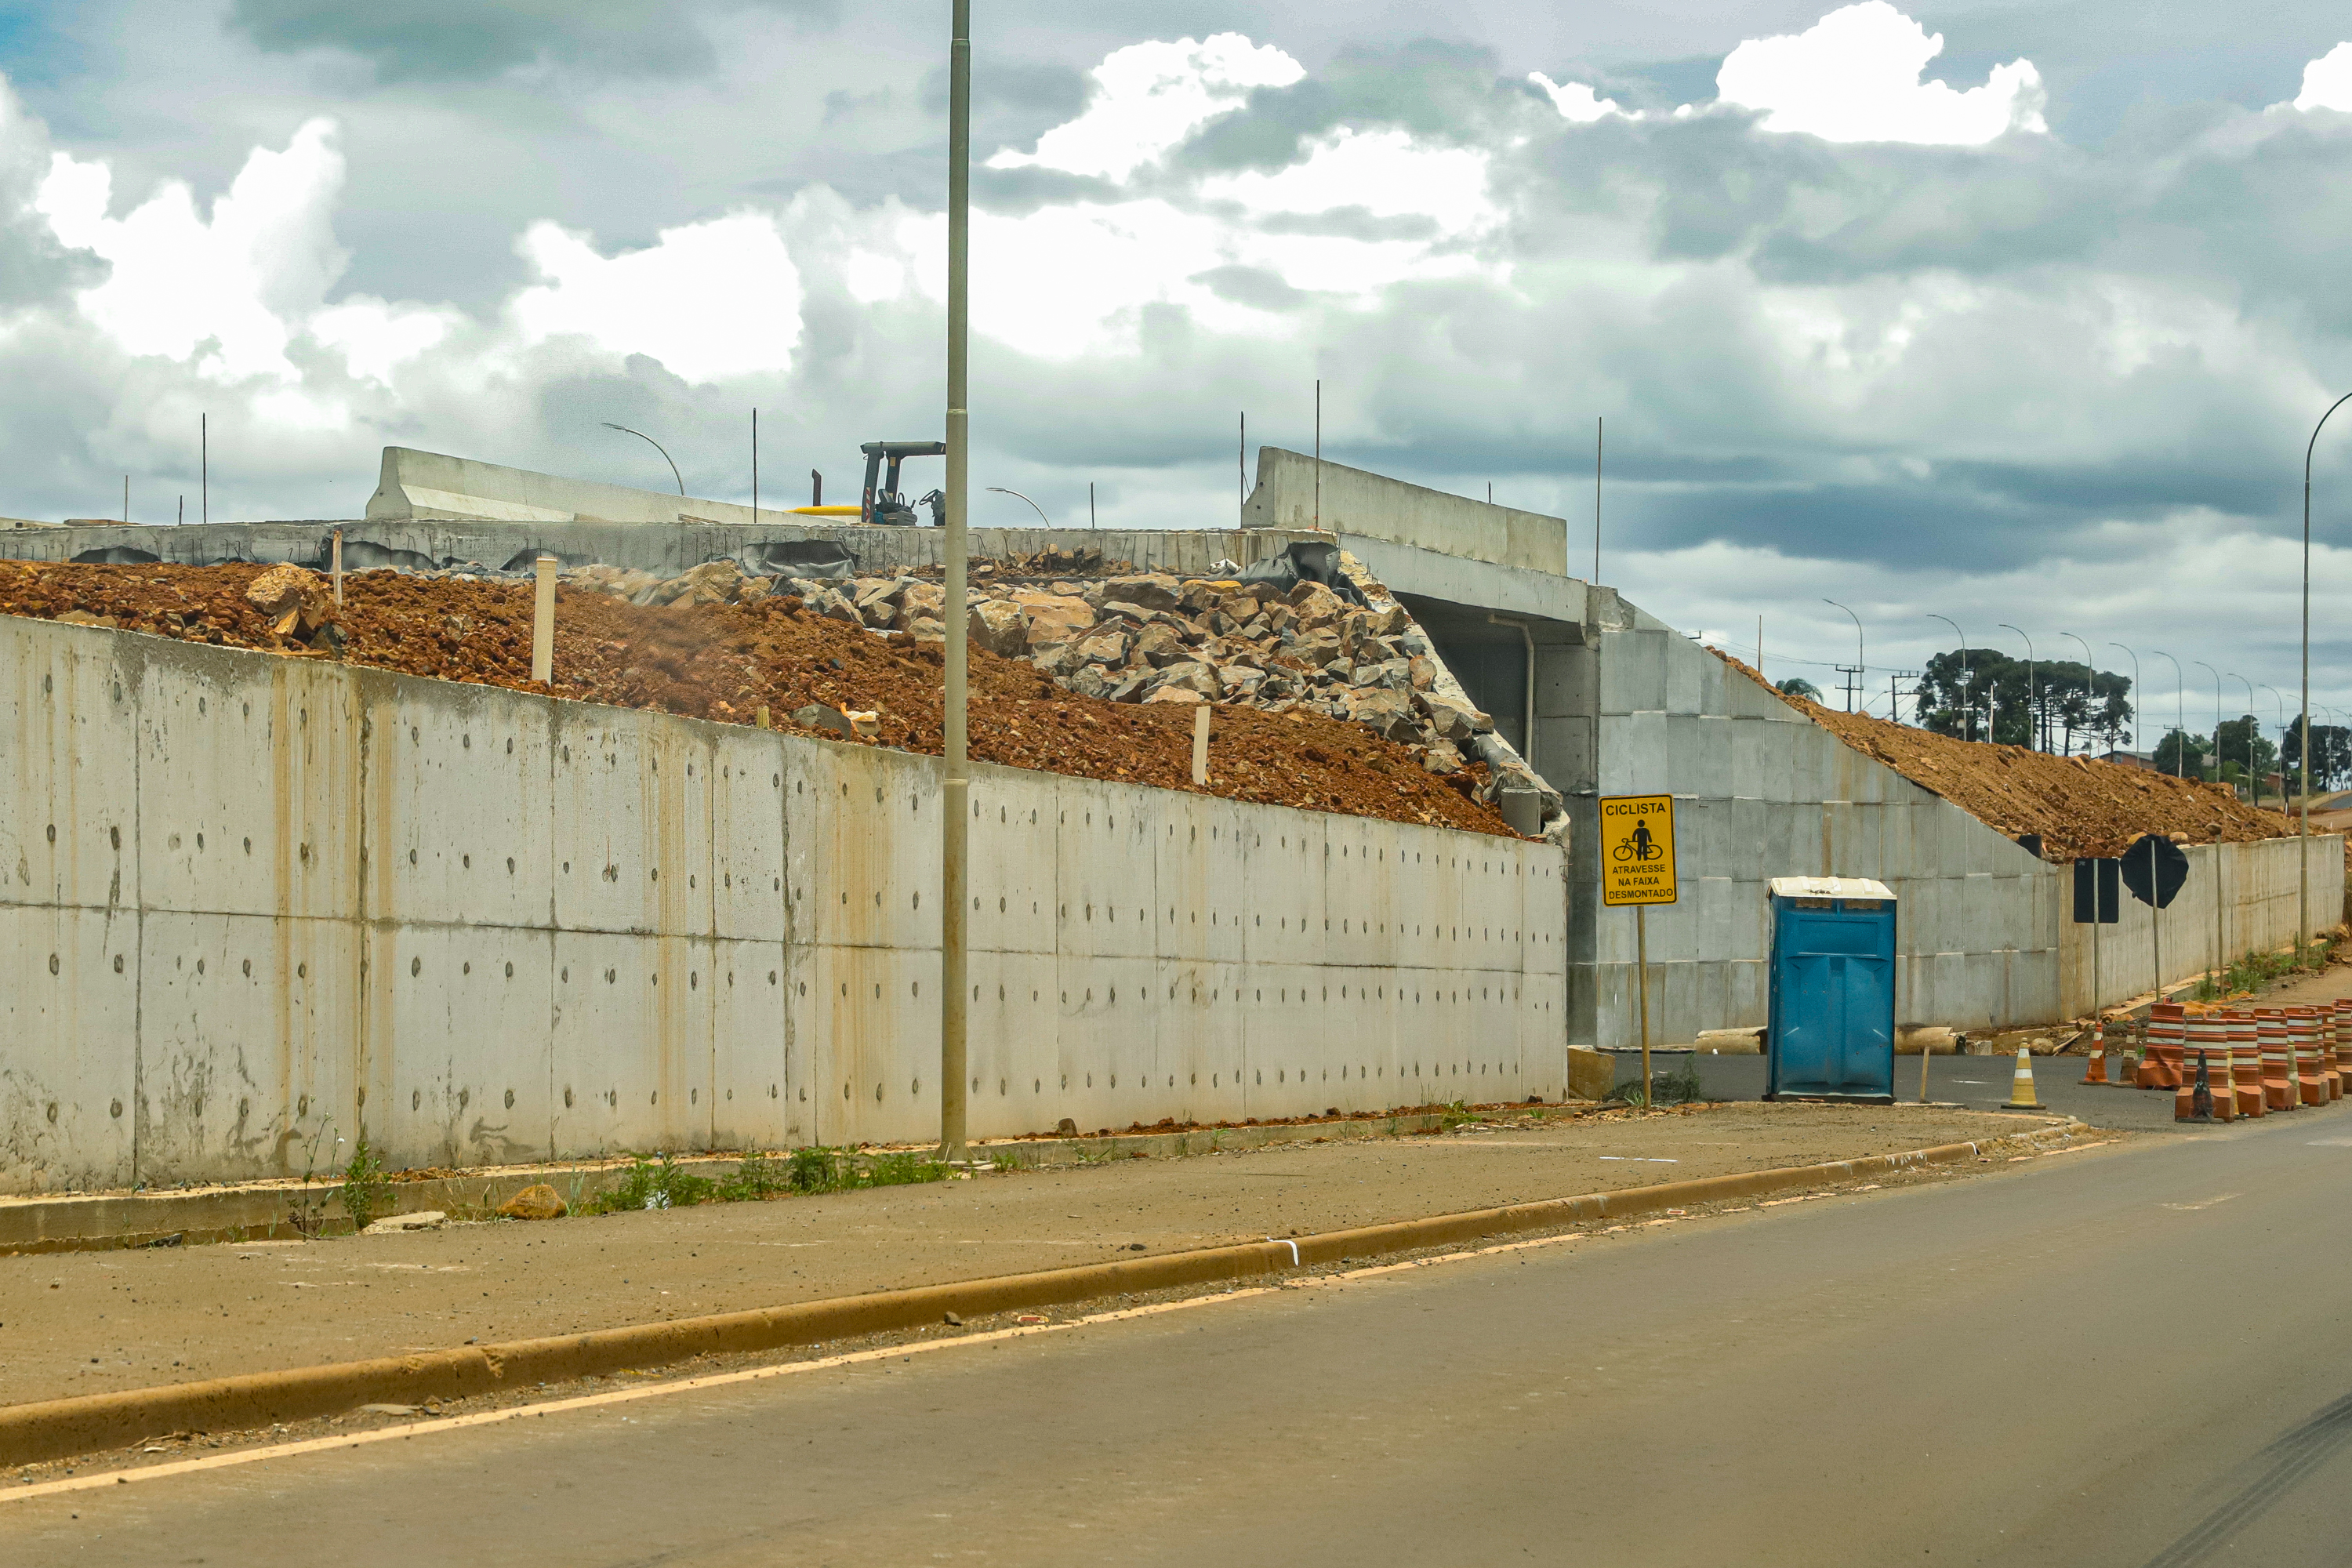 Obras de duplicação na BR-277 em Guarapuava ultrapassam 70% de conclusão